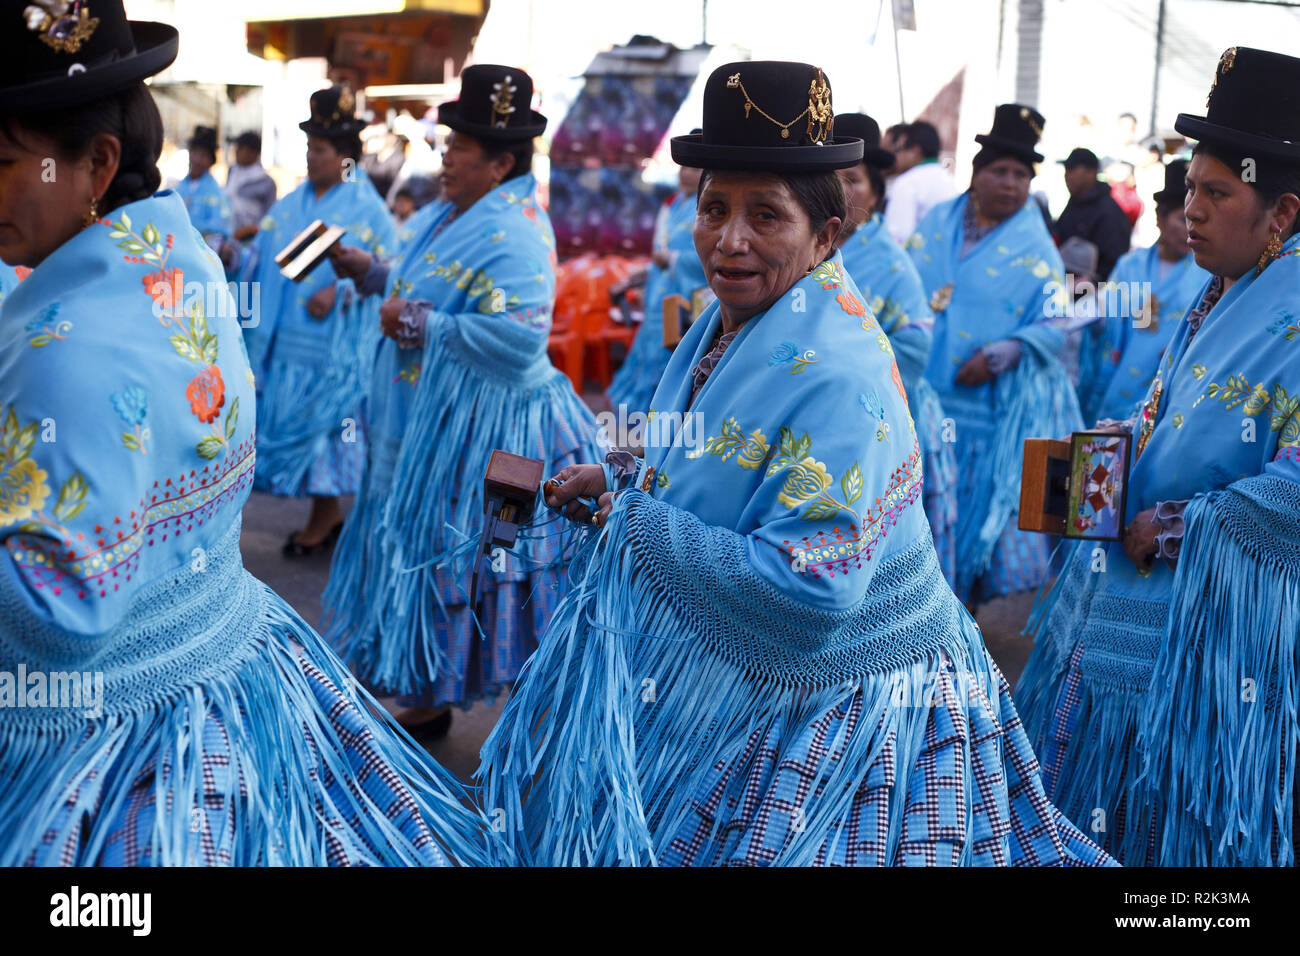 Bolivia, La Paz, Fiesta del Gran Poder, Stock Photo